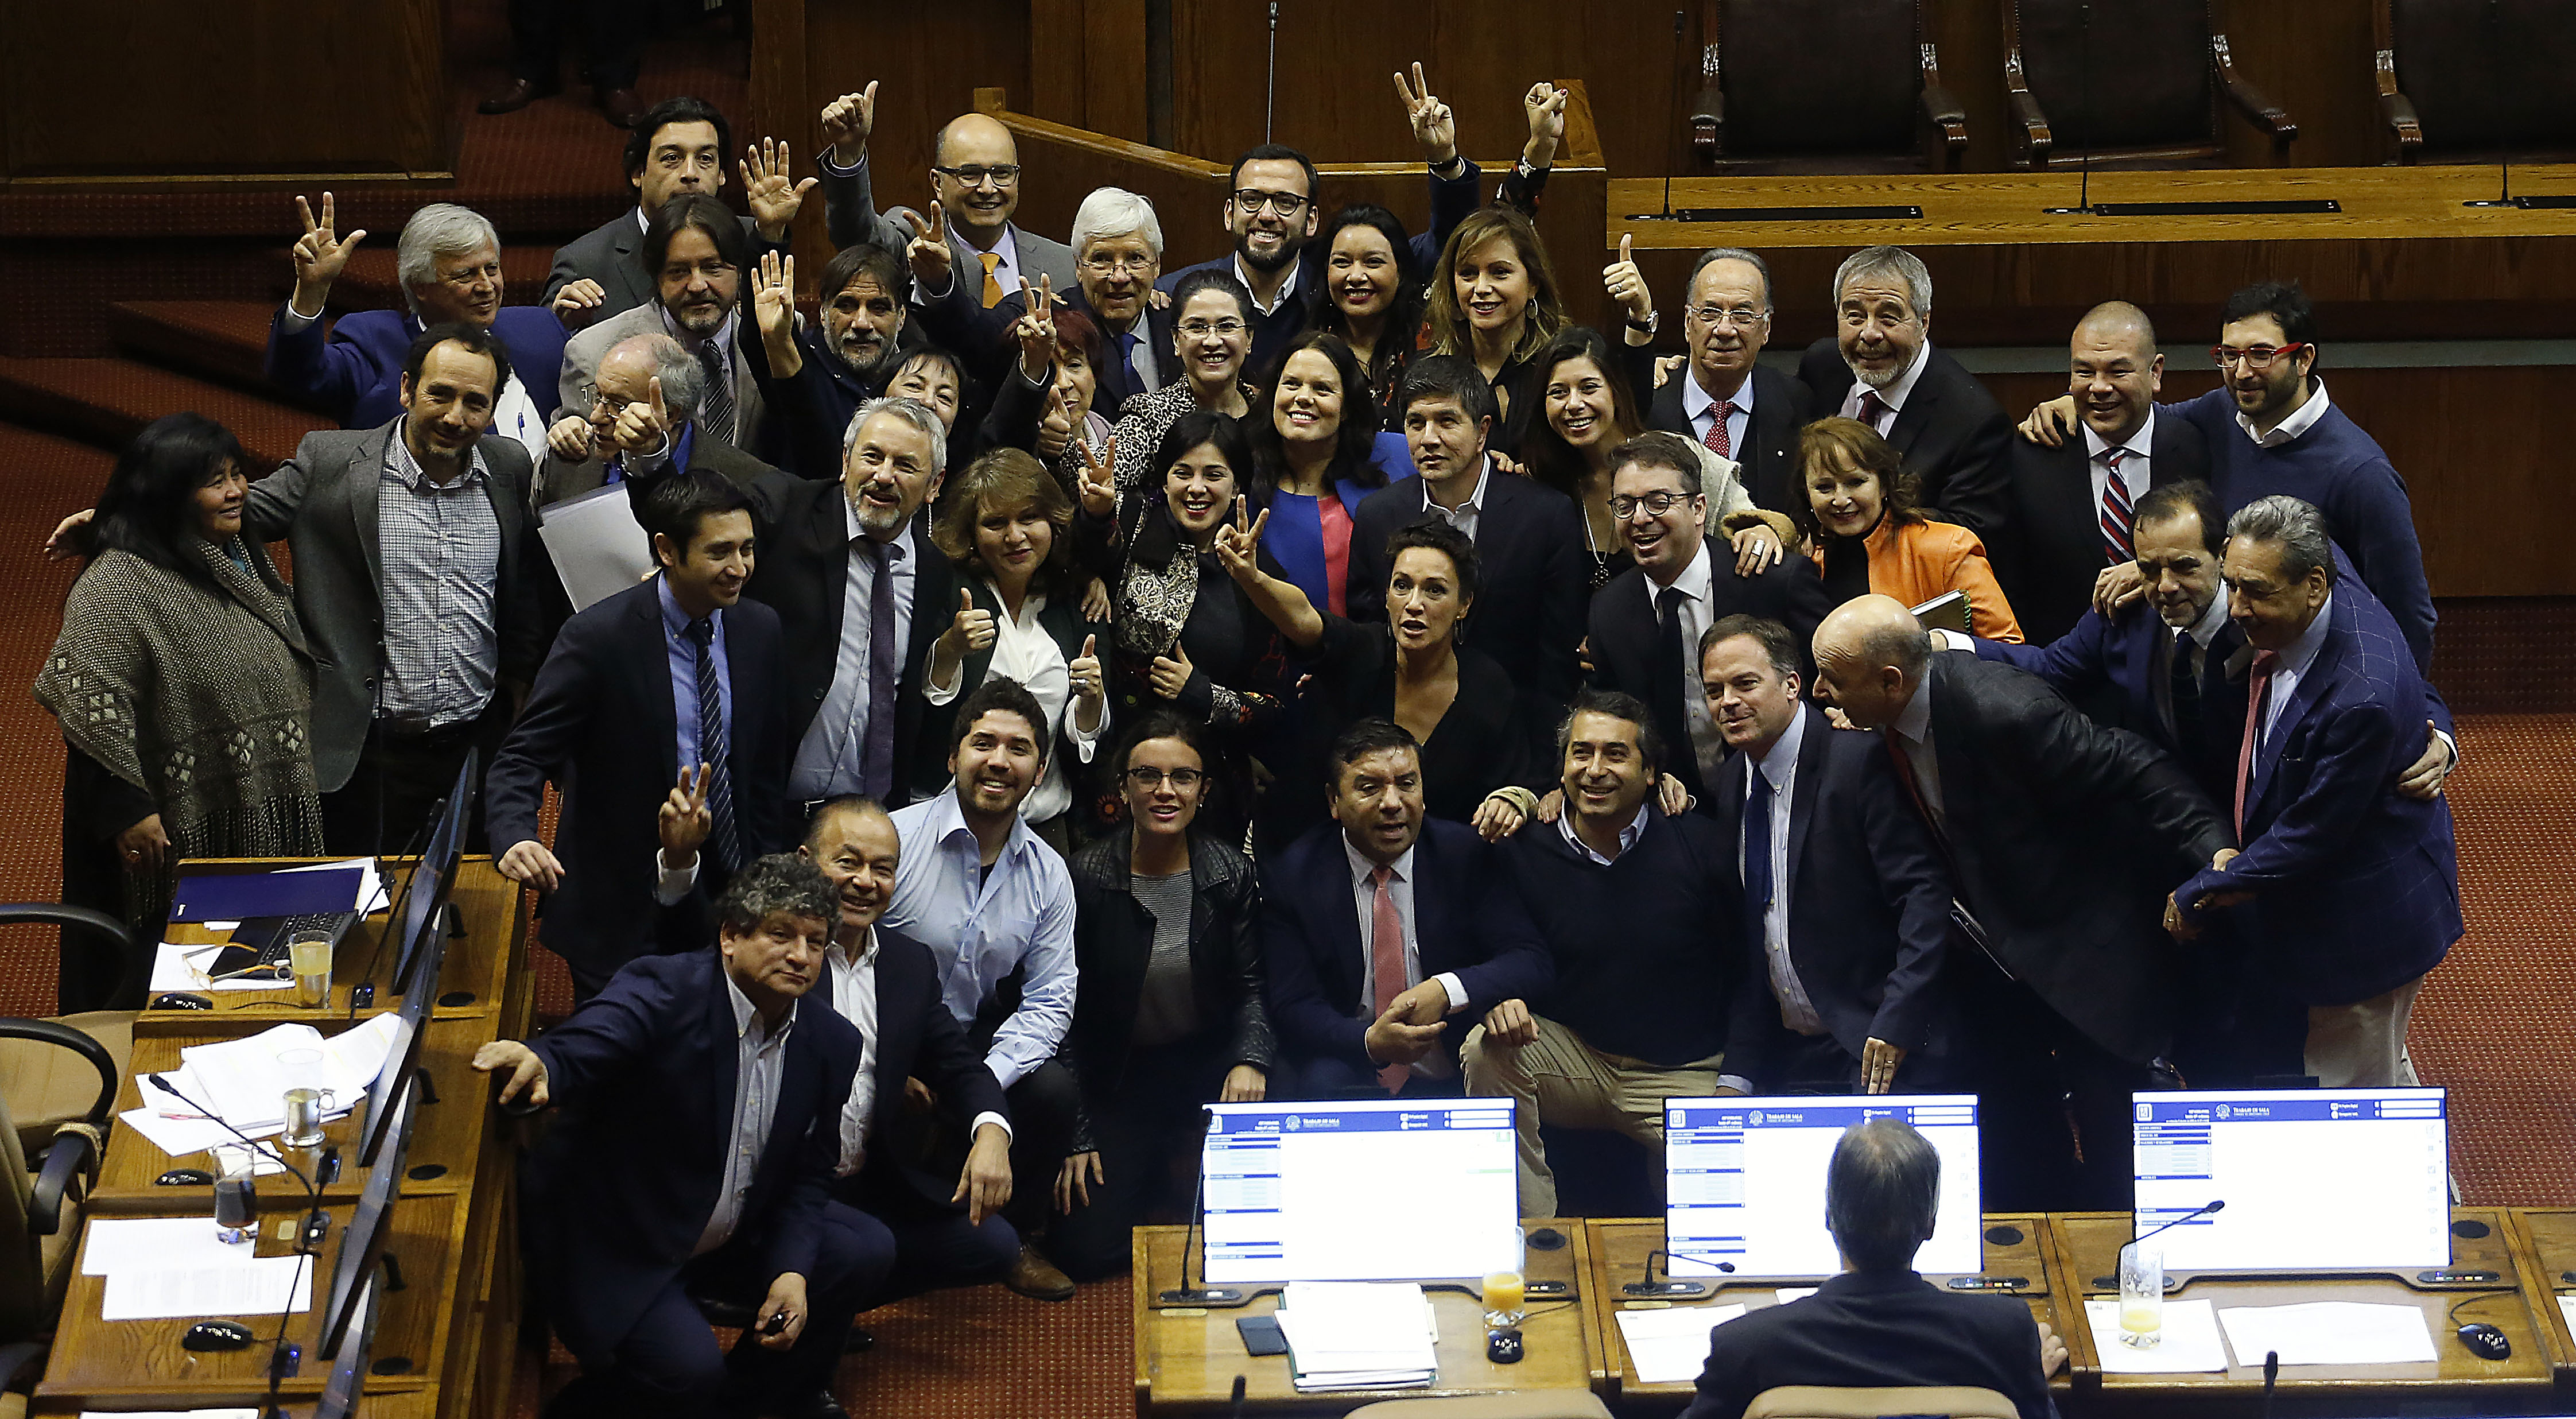 10 Julio de 2018 /VALPARAISO Maya Fernandez se toma una fotografia con diferentes parlamentarios durante el rechazo de la censura de la mesa de la cámara de diputados. FOTO : PABLO OVALLE ISASMENDI /AGENCIAUNO